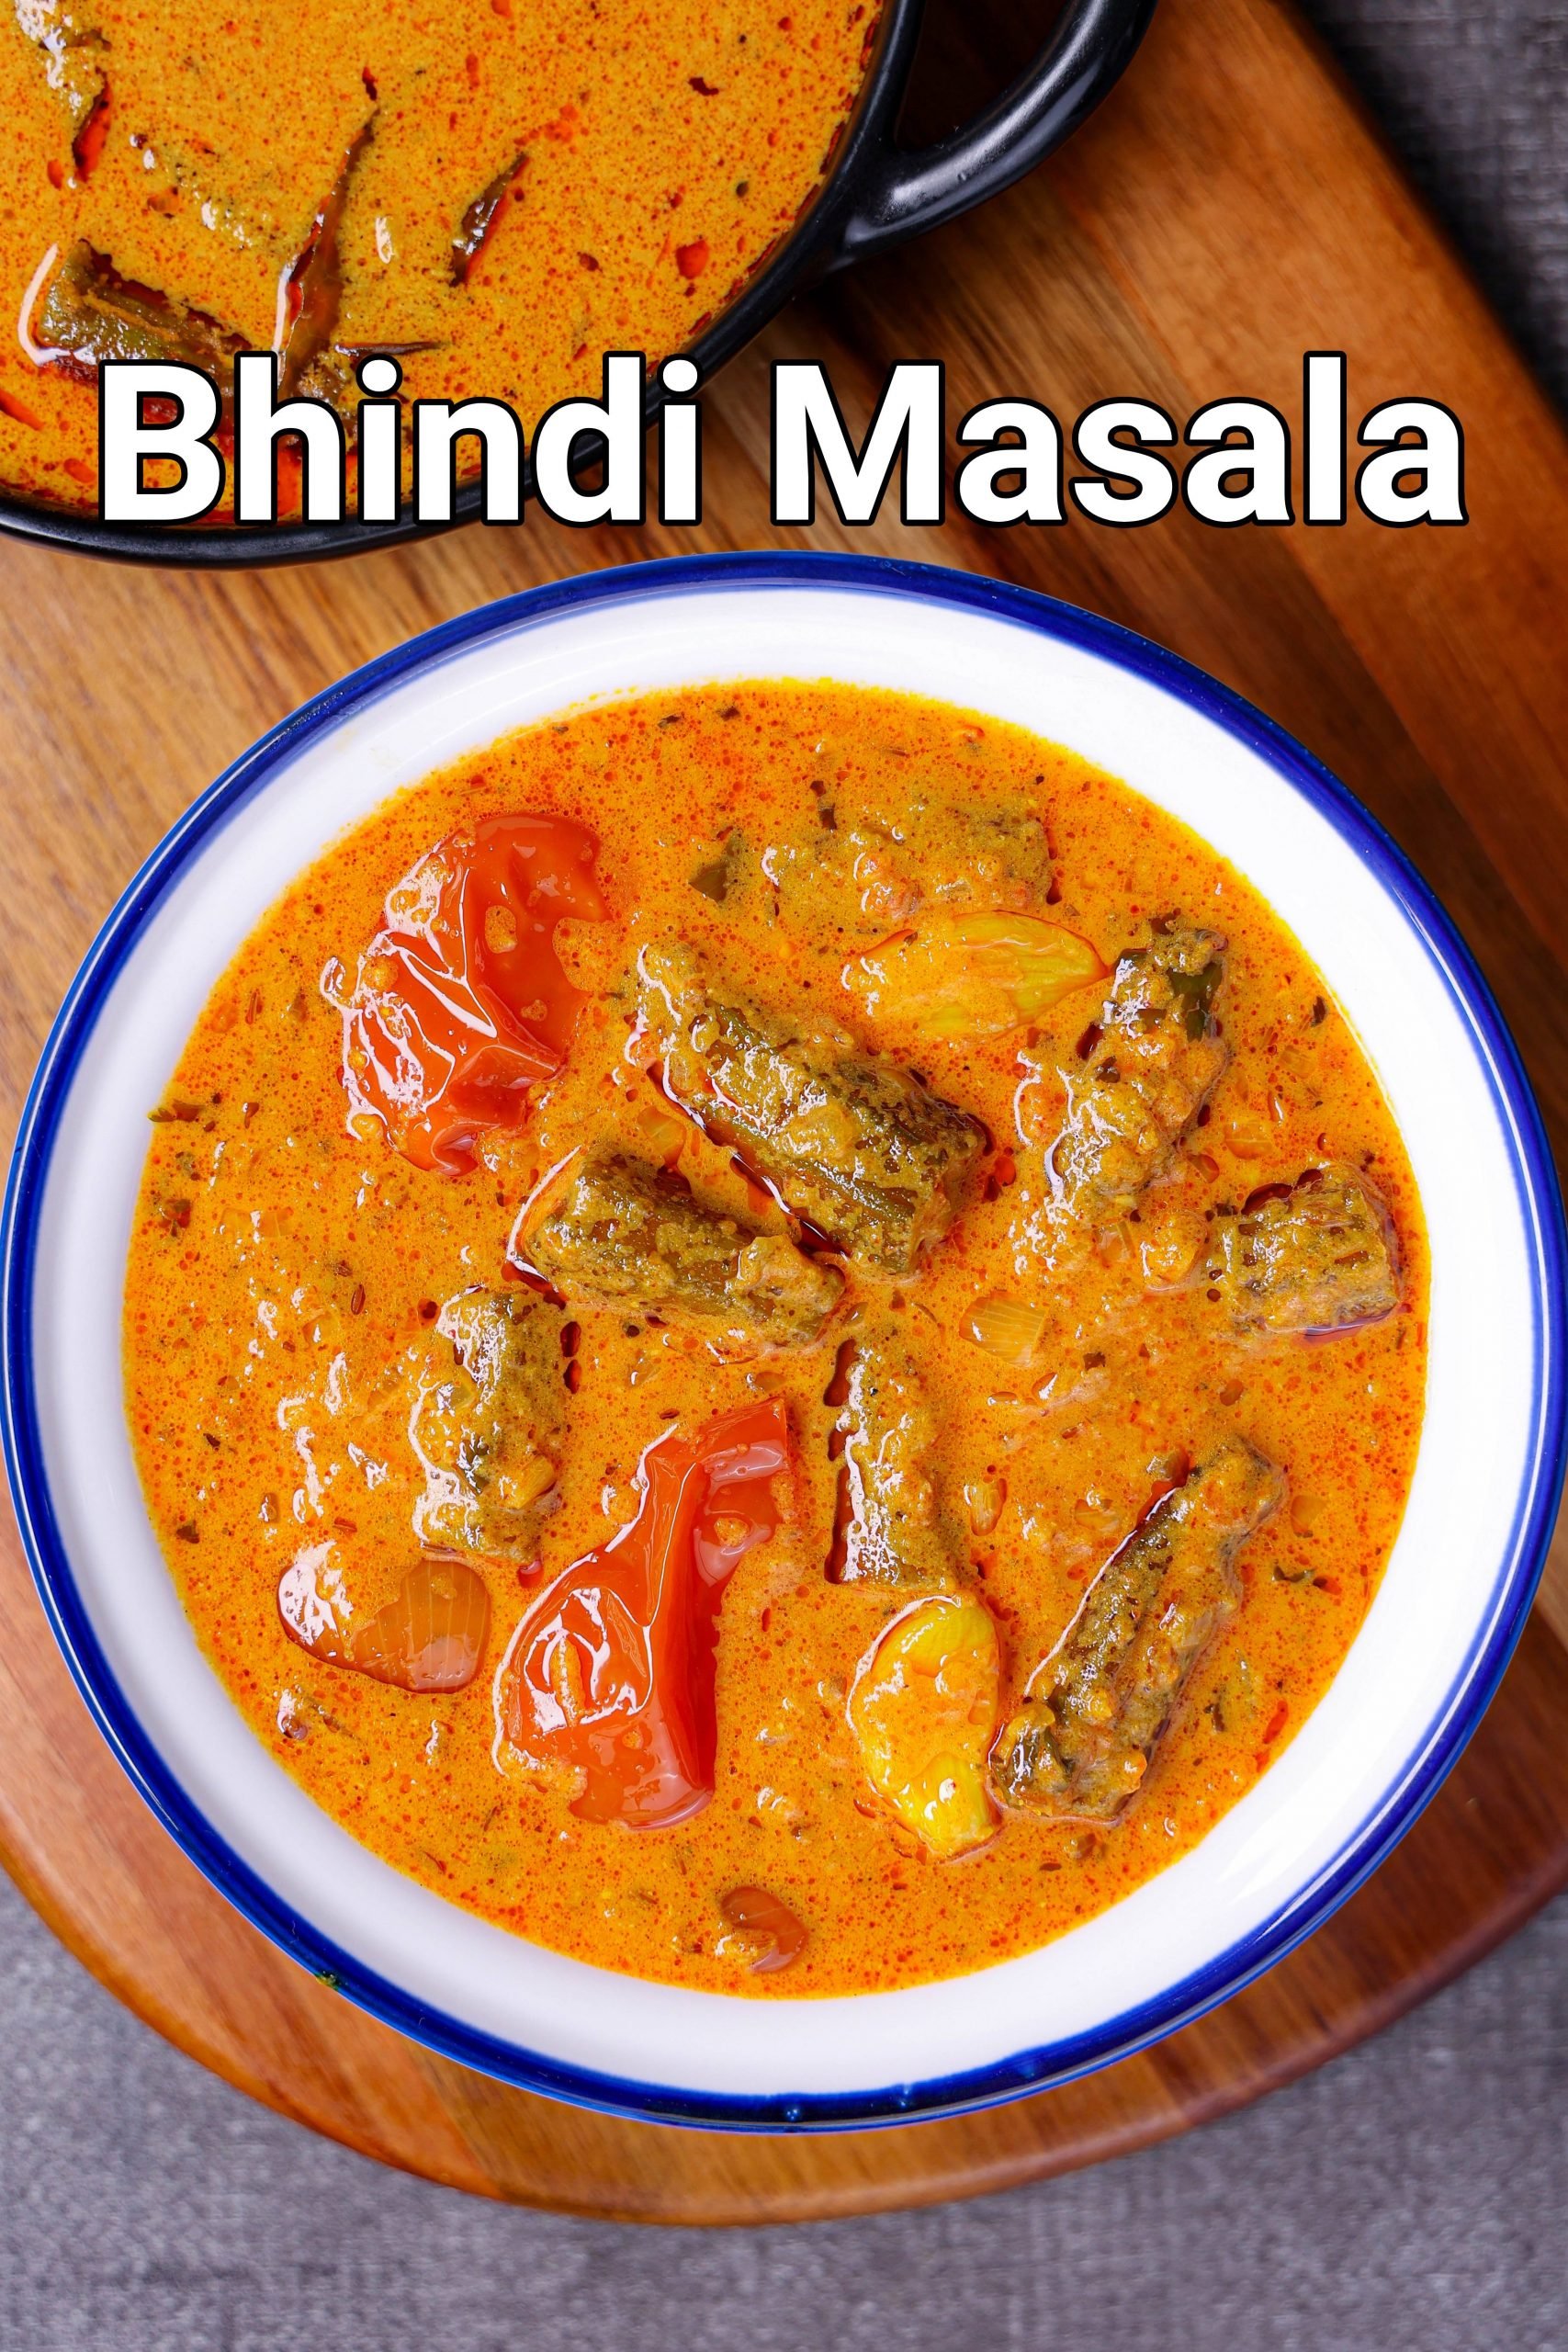 receta de bhindi masala / receta de salsa de ki bhindi / curry de okra ...